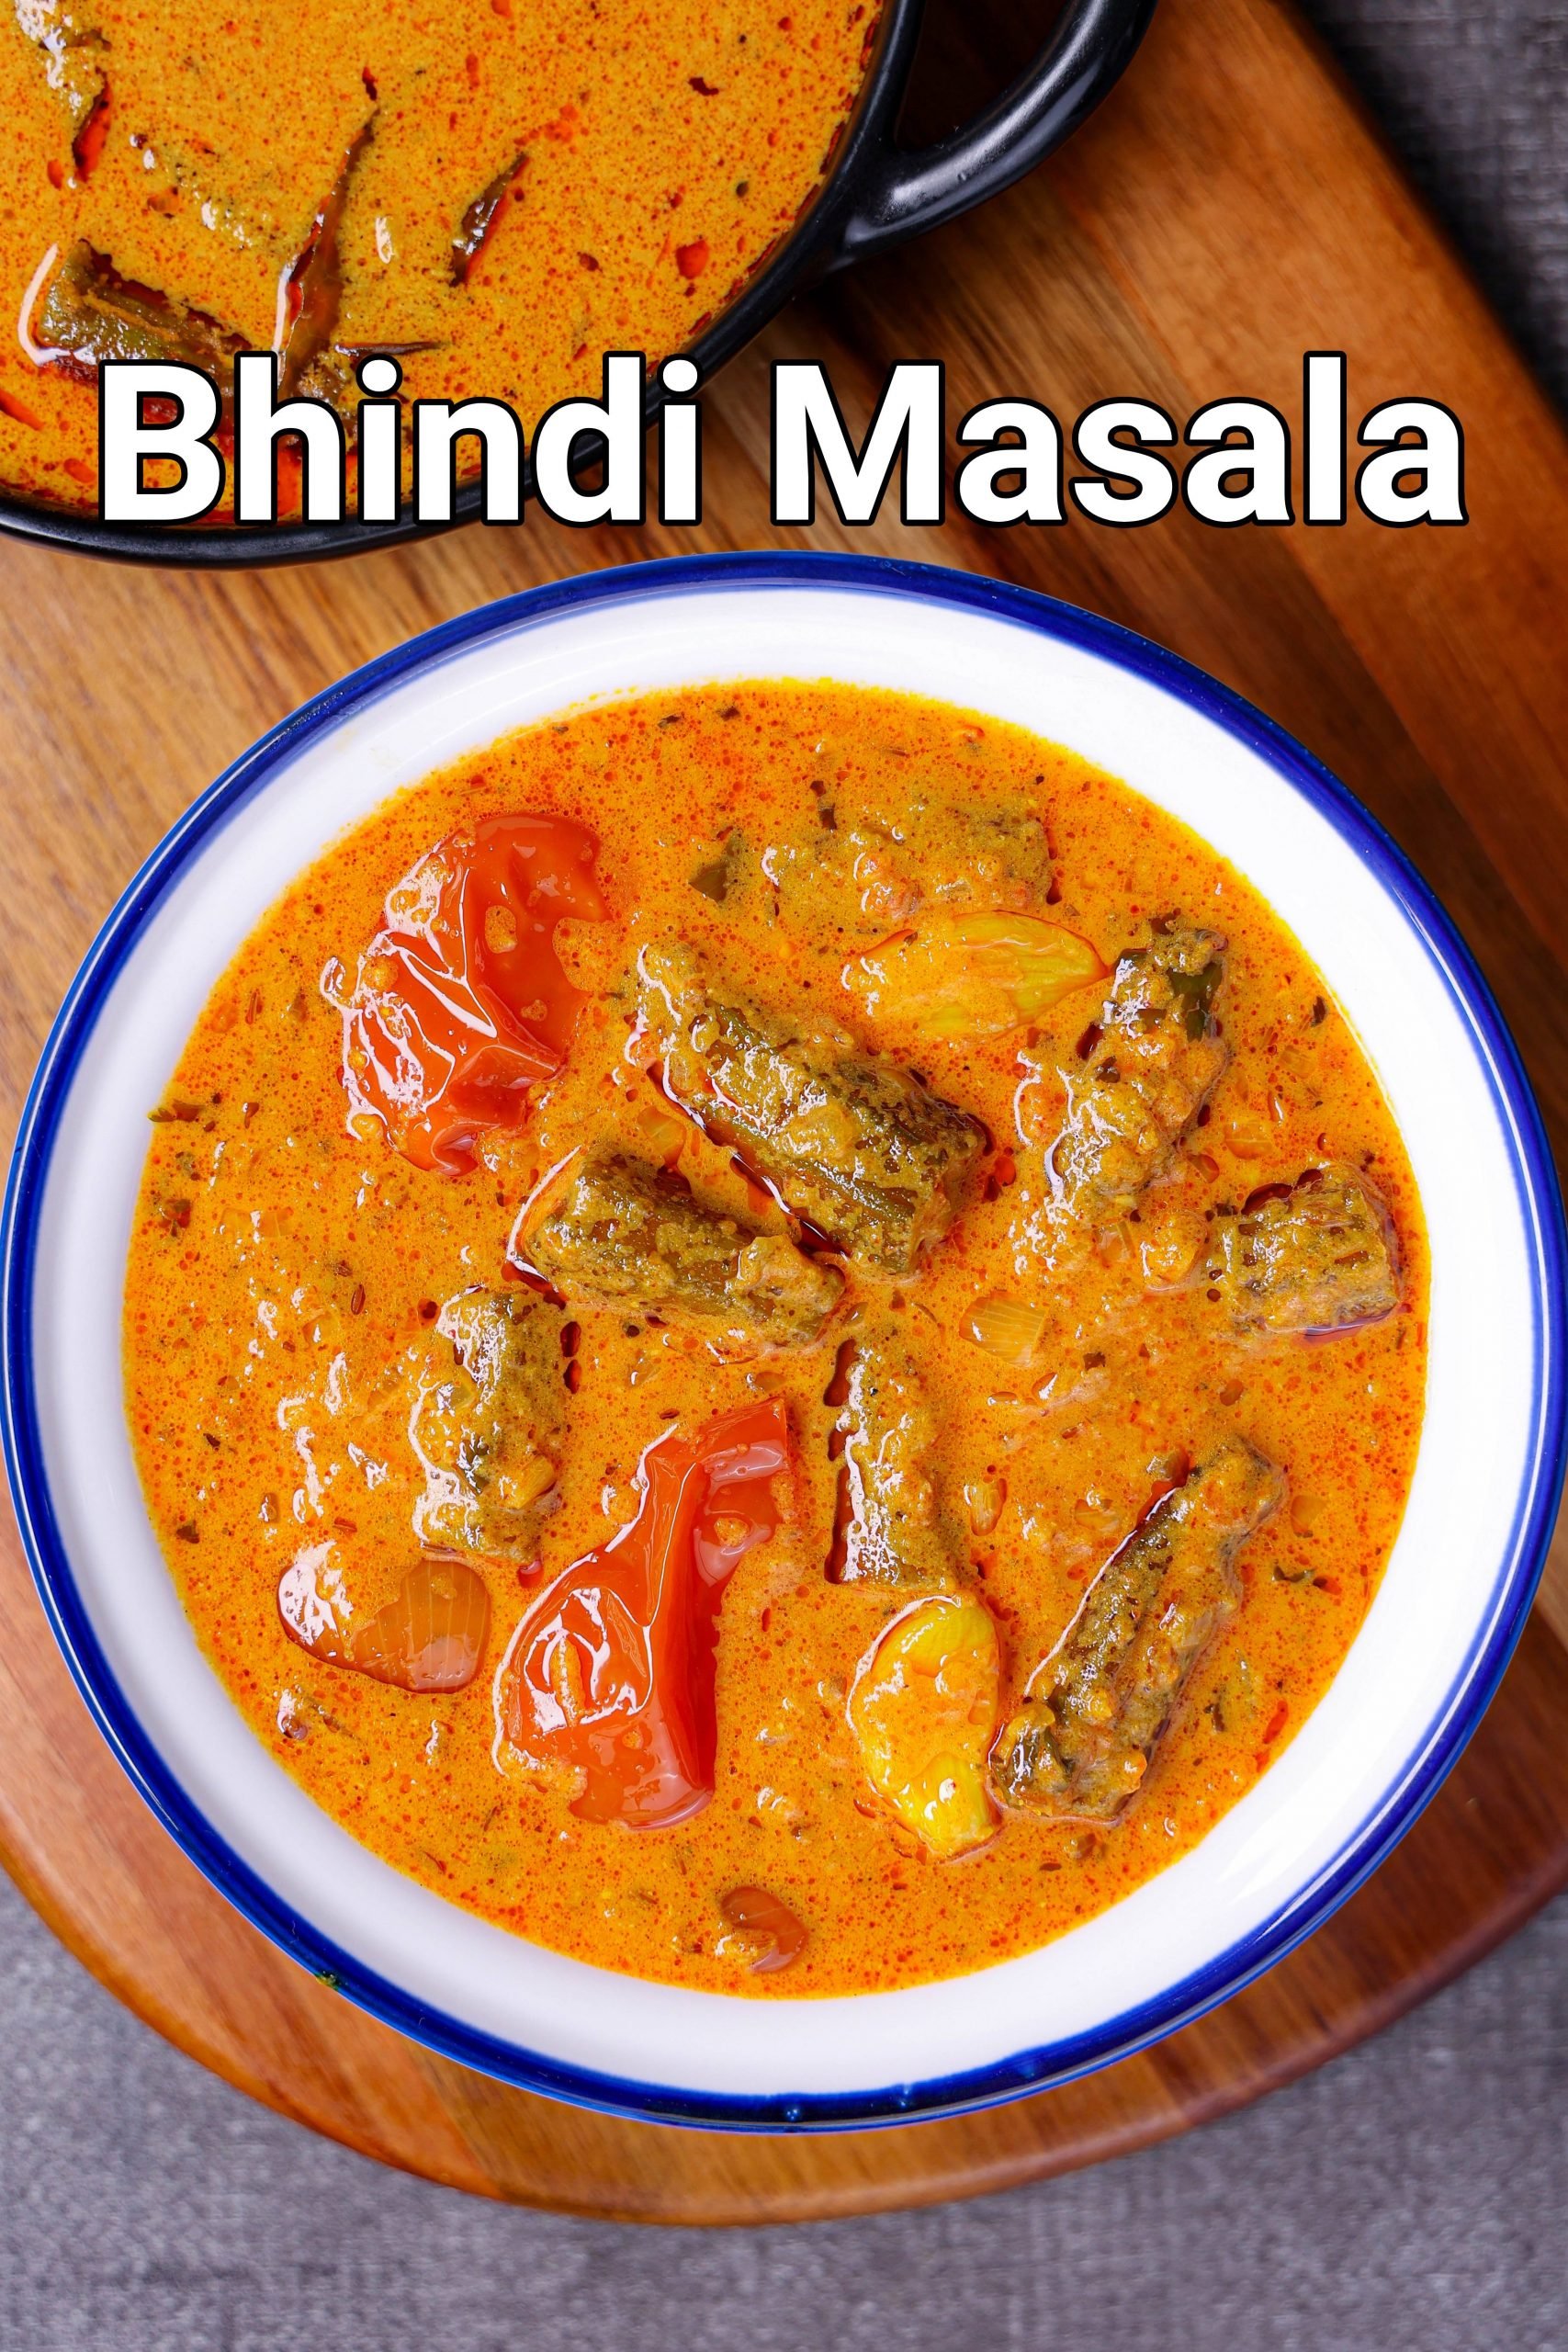 receta de bhindi masala / receta de salsa de ki bhindi / curry de okra ...